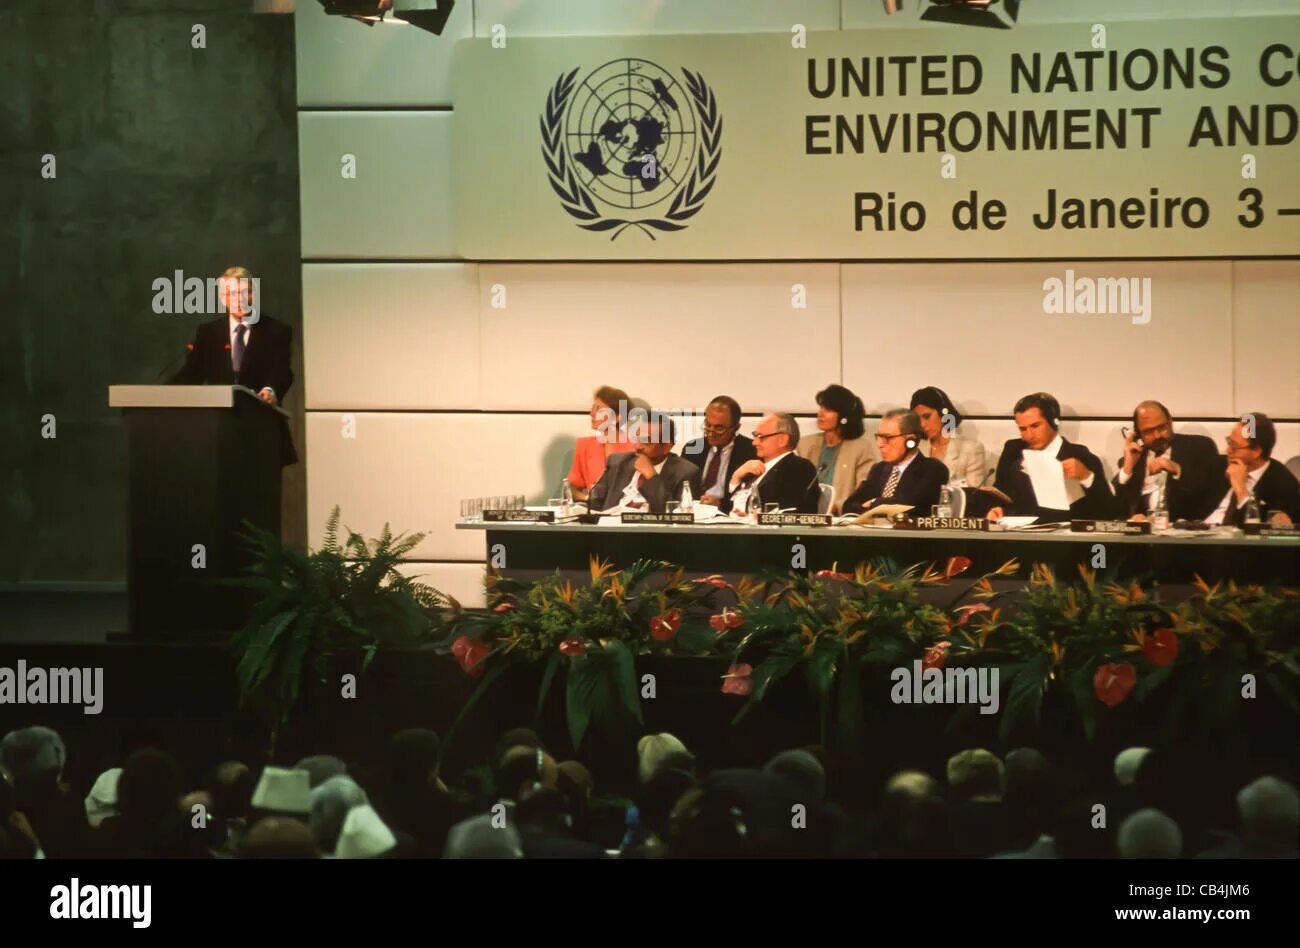 Конференция ООН В Рио де Жанейро 1992. Саммит в Рио де Жанейро 1992. Конференция ООН по окружающей среде и развитию в Рио-де-Жанейро. Конференции ООН по окружающей среде в Рио-де-Жанейро (1992 г.)». Конференция оон в рио де жанейро